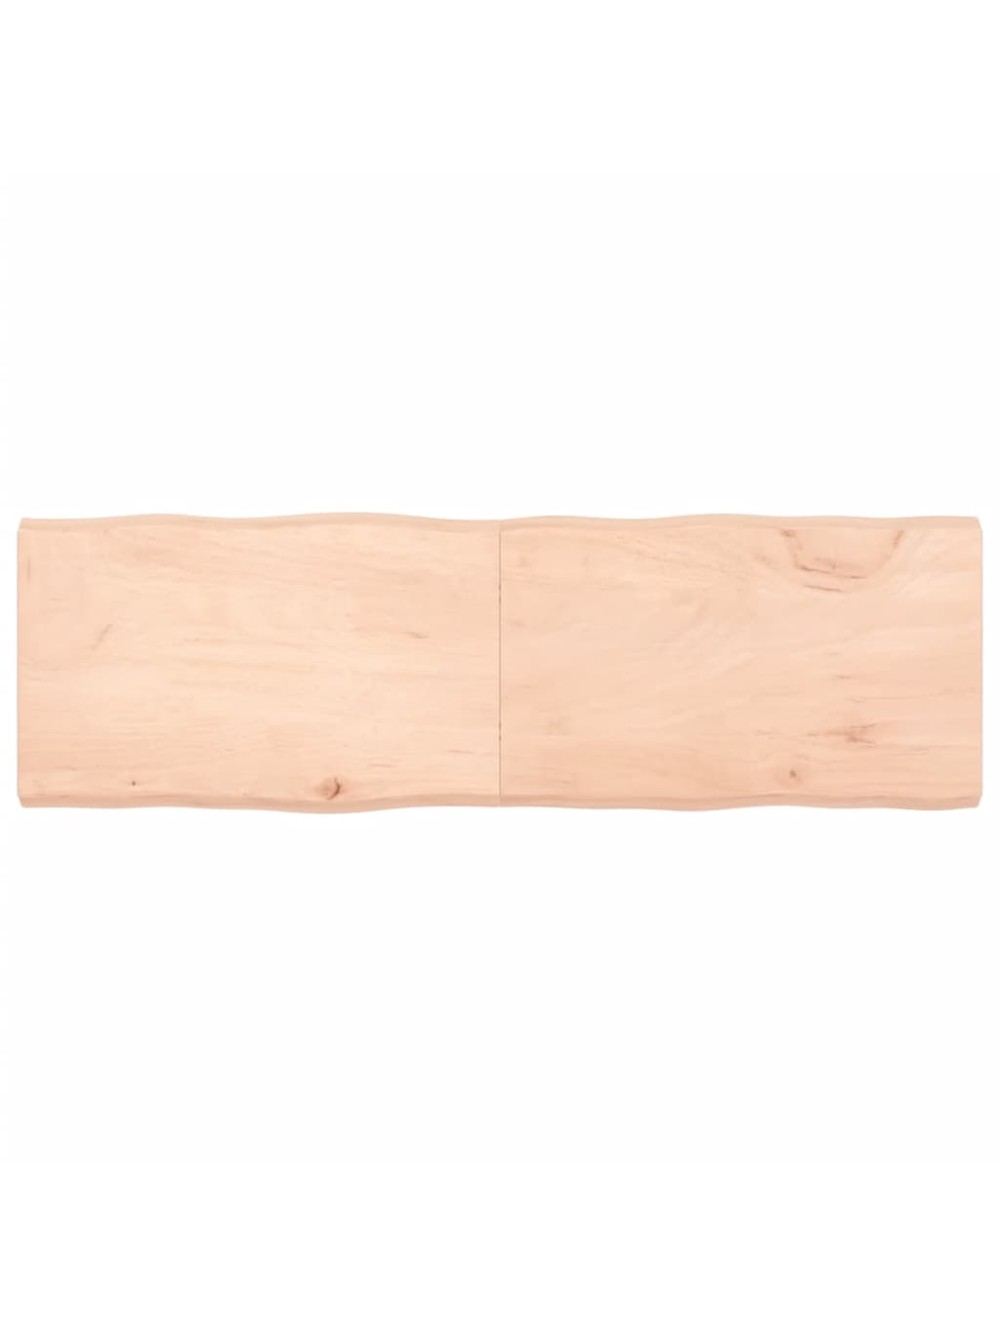 Tischplatte 160x50x(2-6) cm Massivholz Unbehandelt BaumkanteHome-Essentials